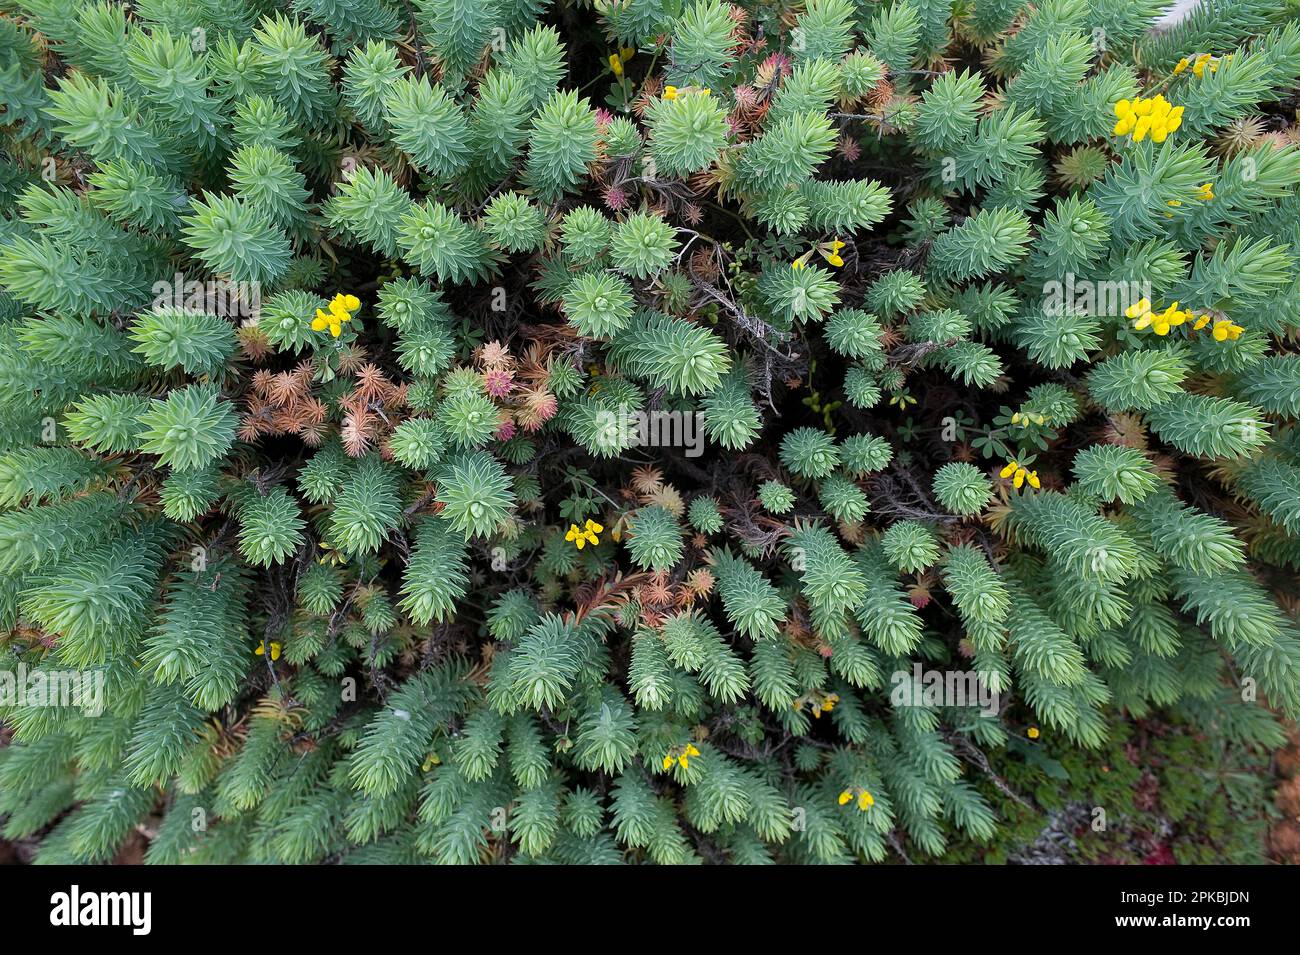 Euphorbia pithyusa o Euphorbia delle Baleari. Capo Caccia,  Alghero. Sardegna. Italia Stock Photo